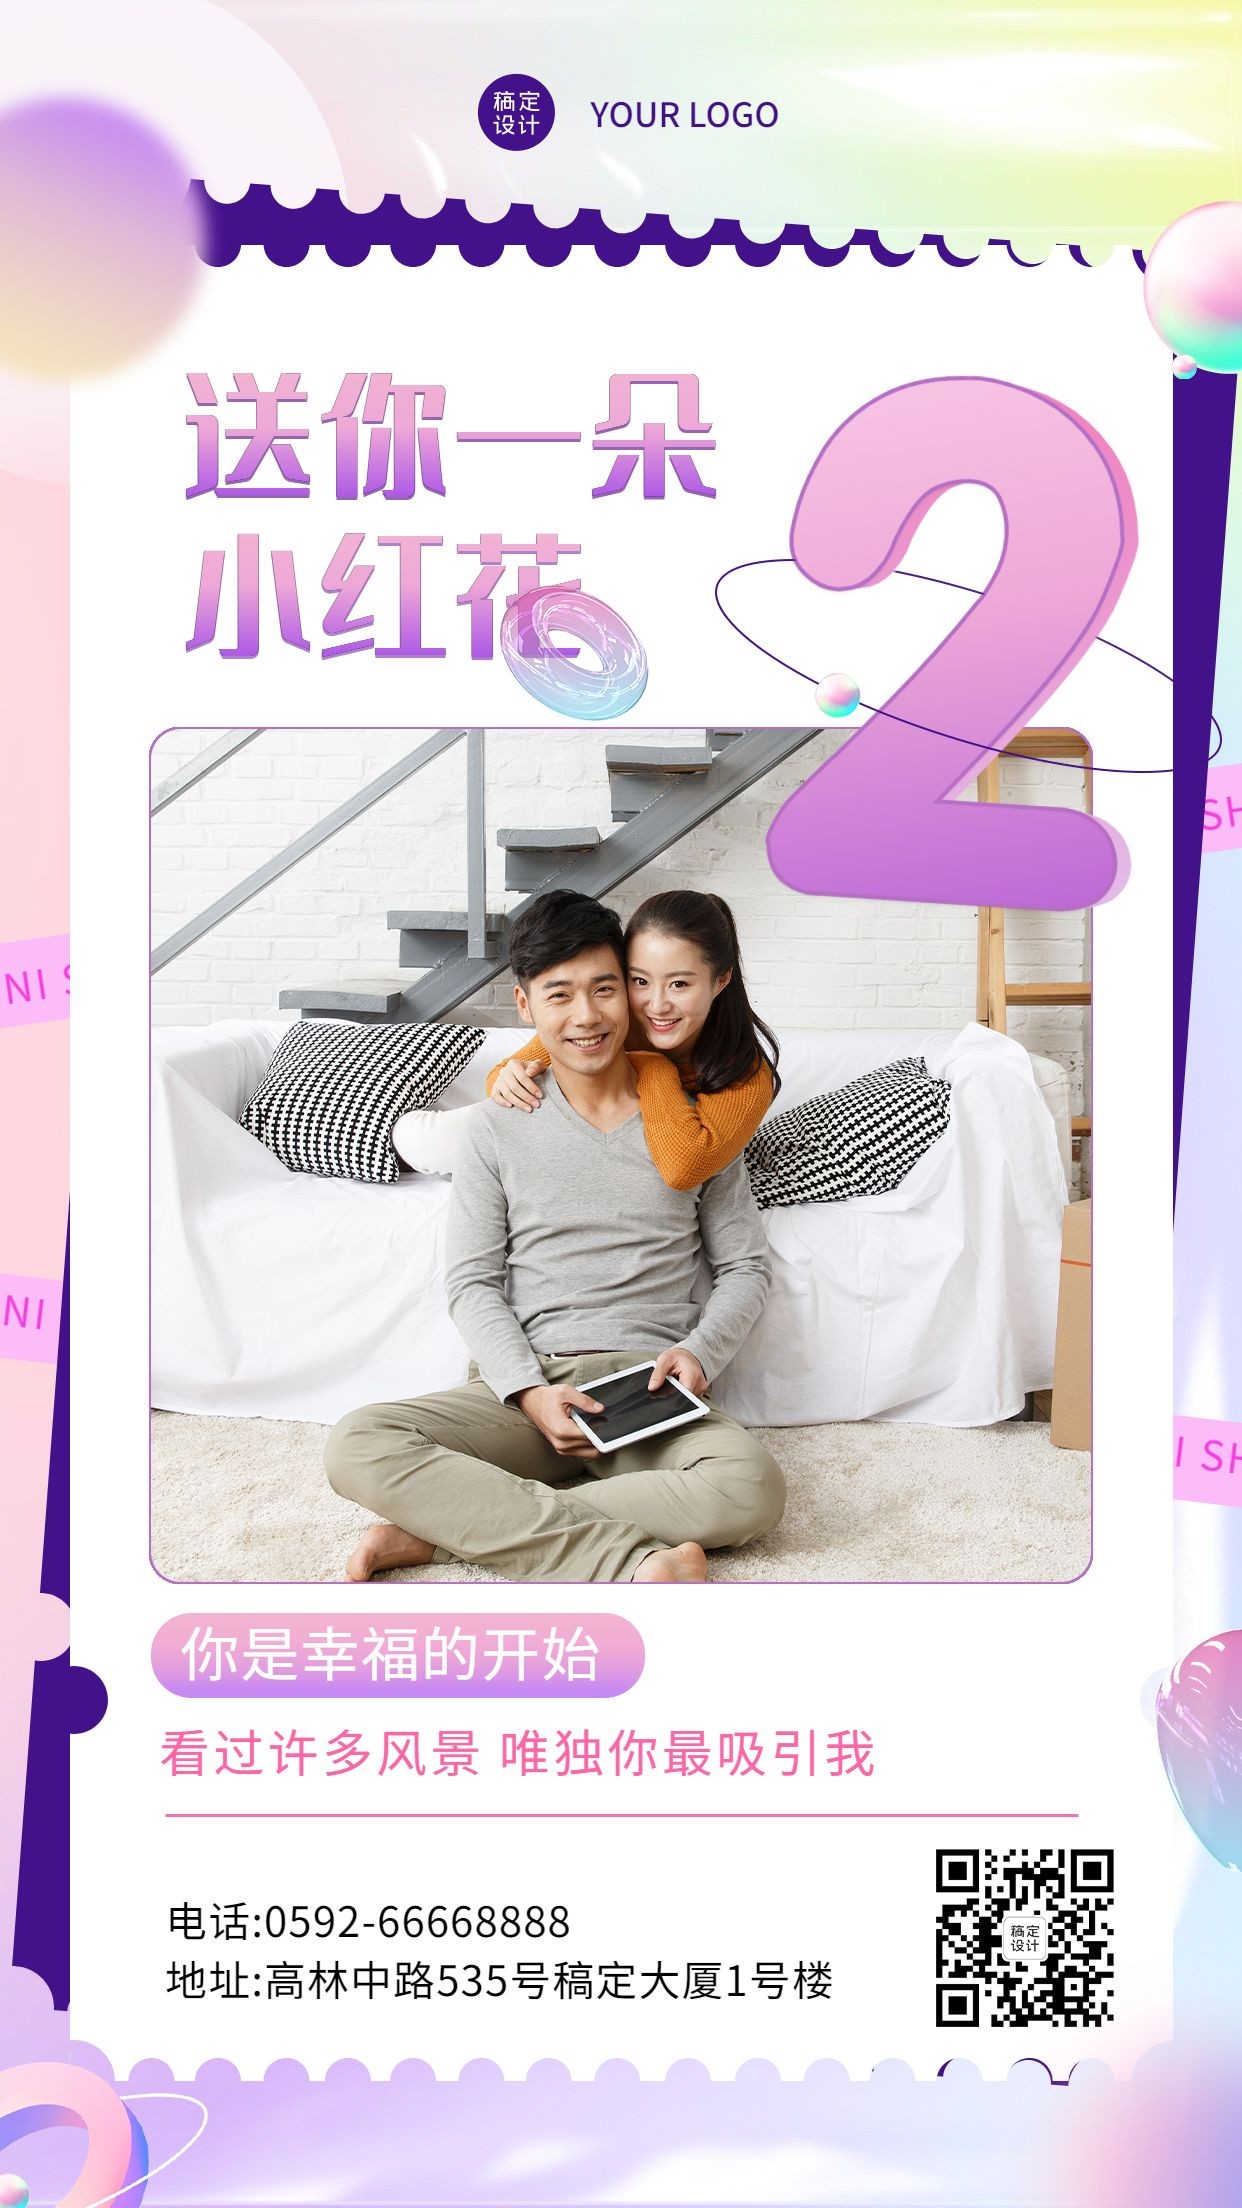 520情人节节日活动情侣晒照排版套系手机海报预览效果